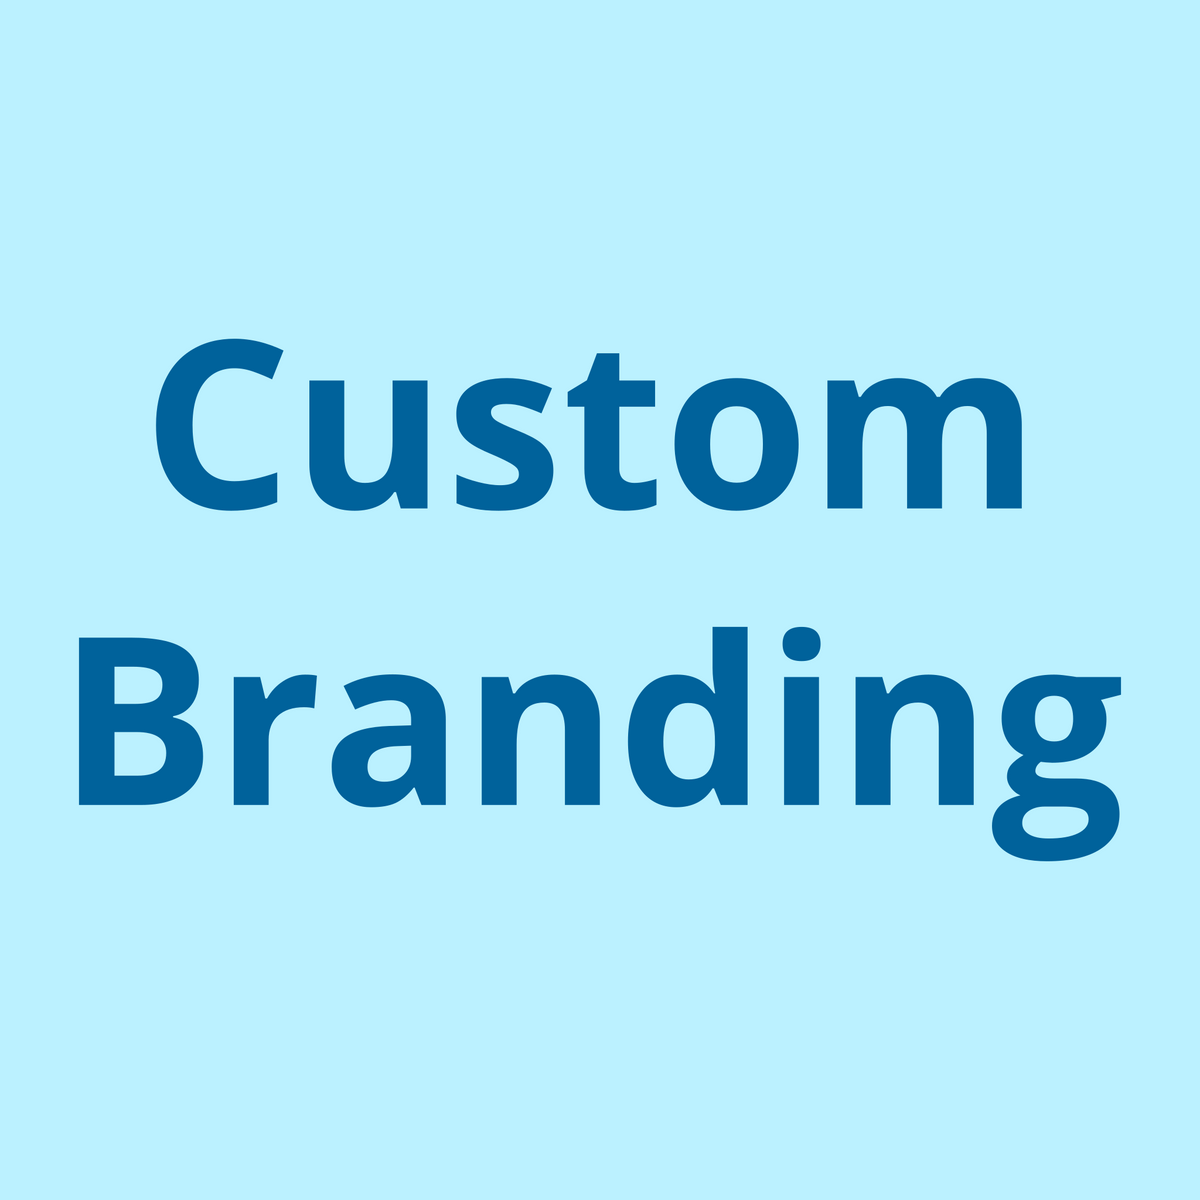 210 Power Bank Custom Branding